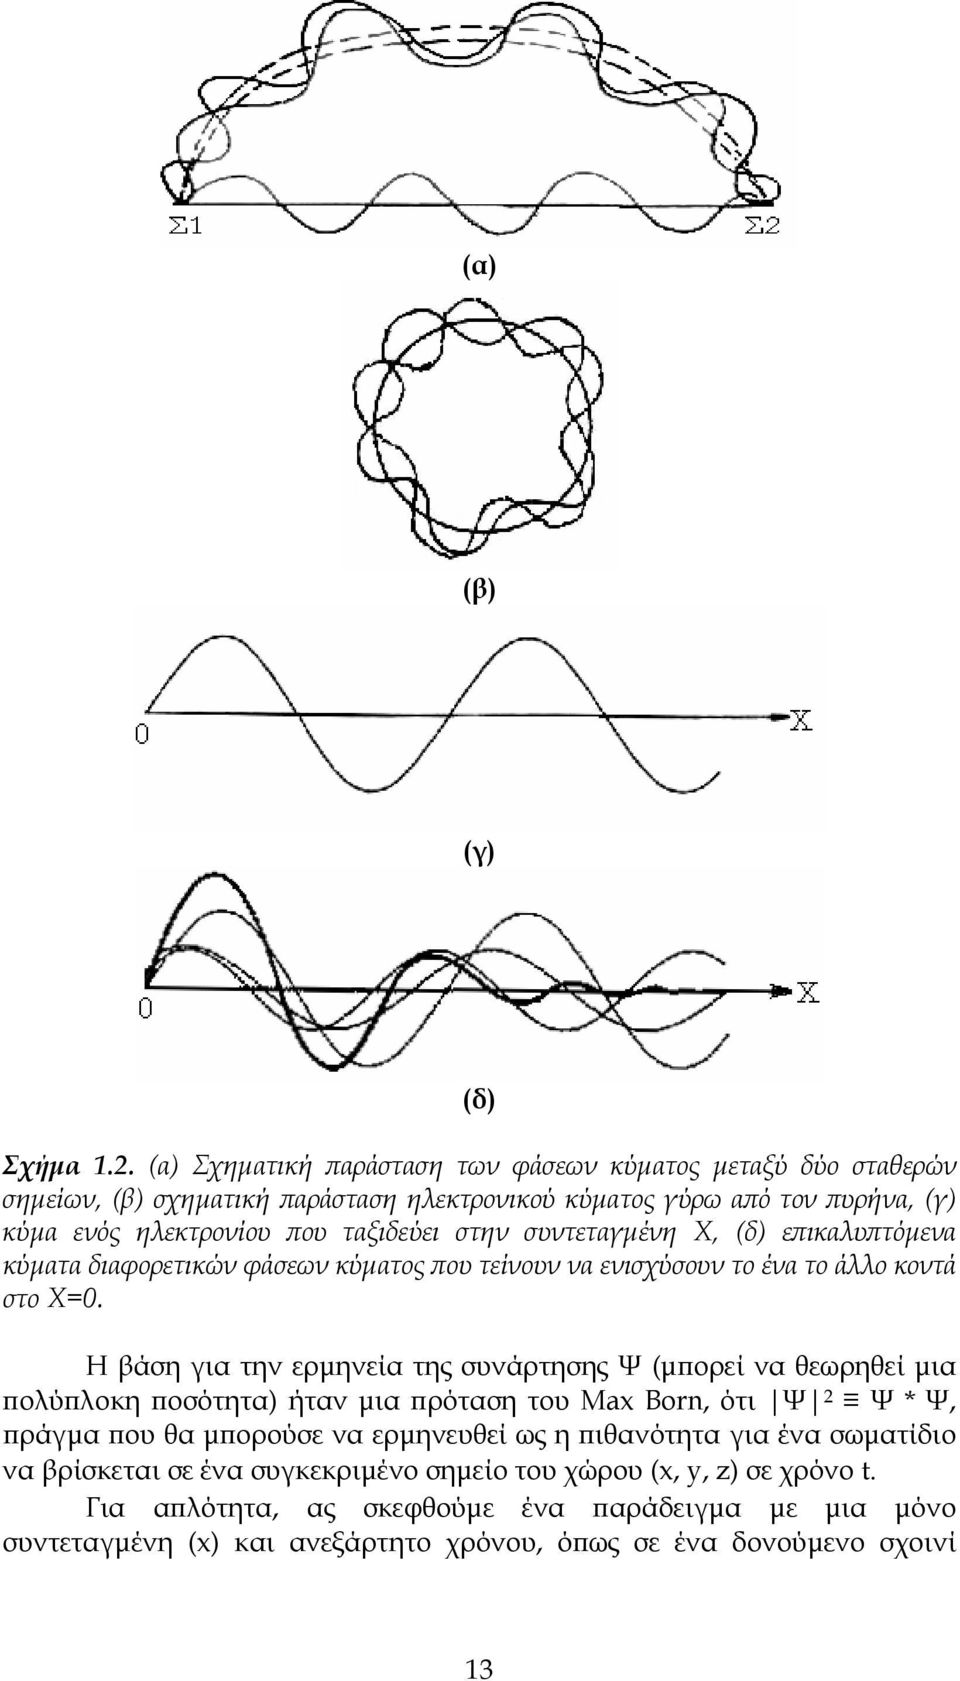 στην συντεταγμένη Χ, (δ) επικαλυπτόμενα κύματα διαφορετικών φάσεων κύματος που τείνουν να ενισχύσουν το ένα το άλλο κοντά στο Χ=0.